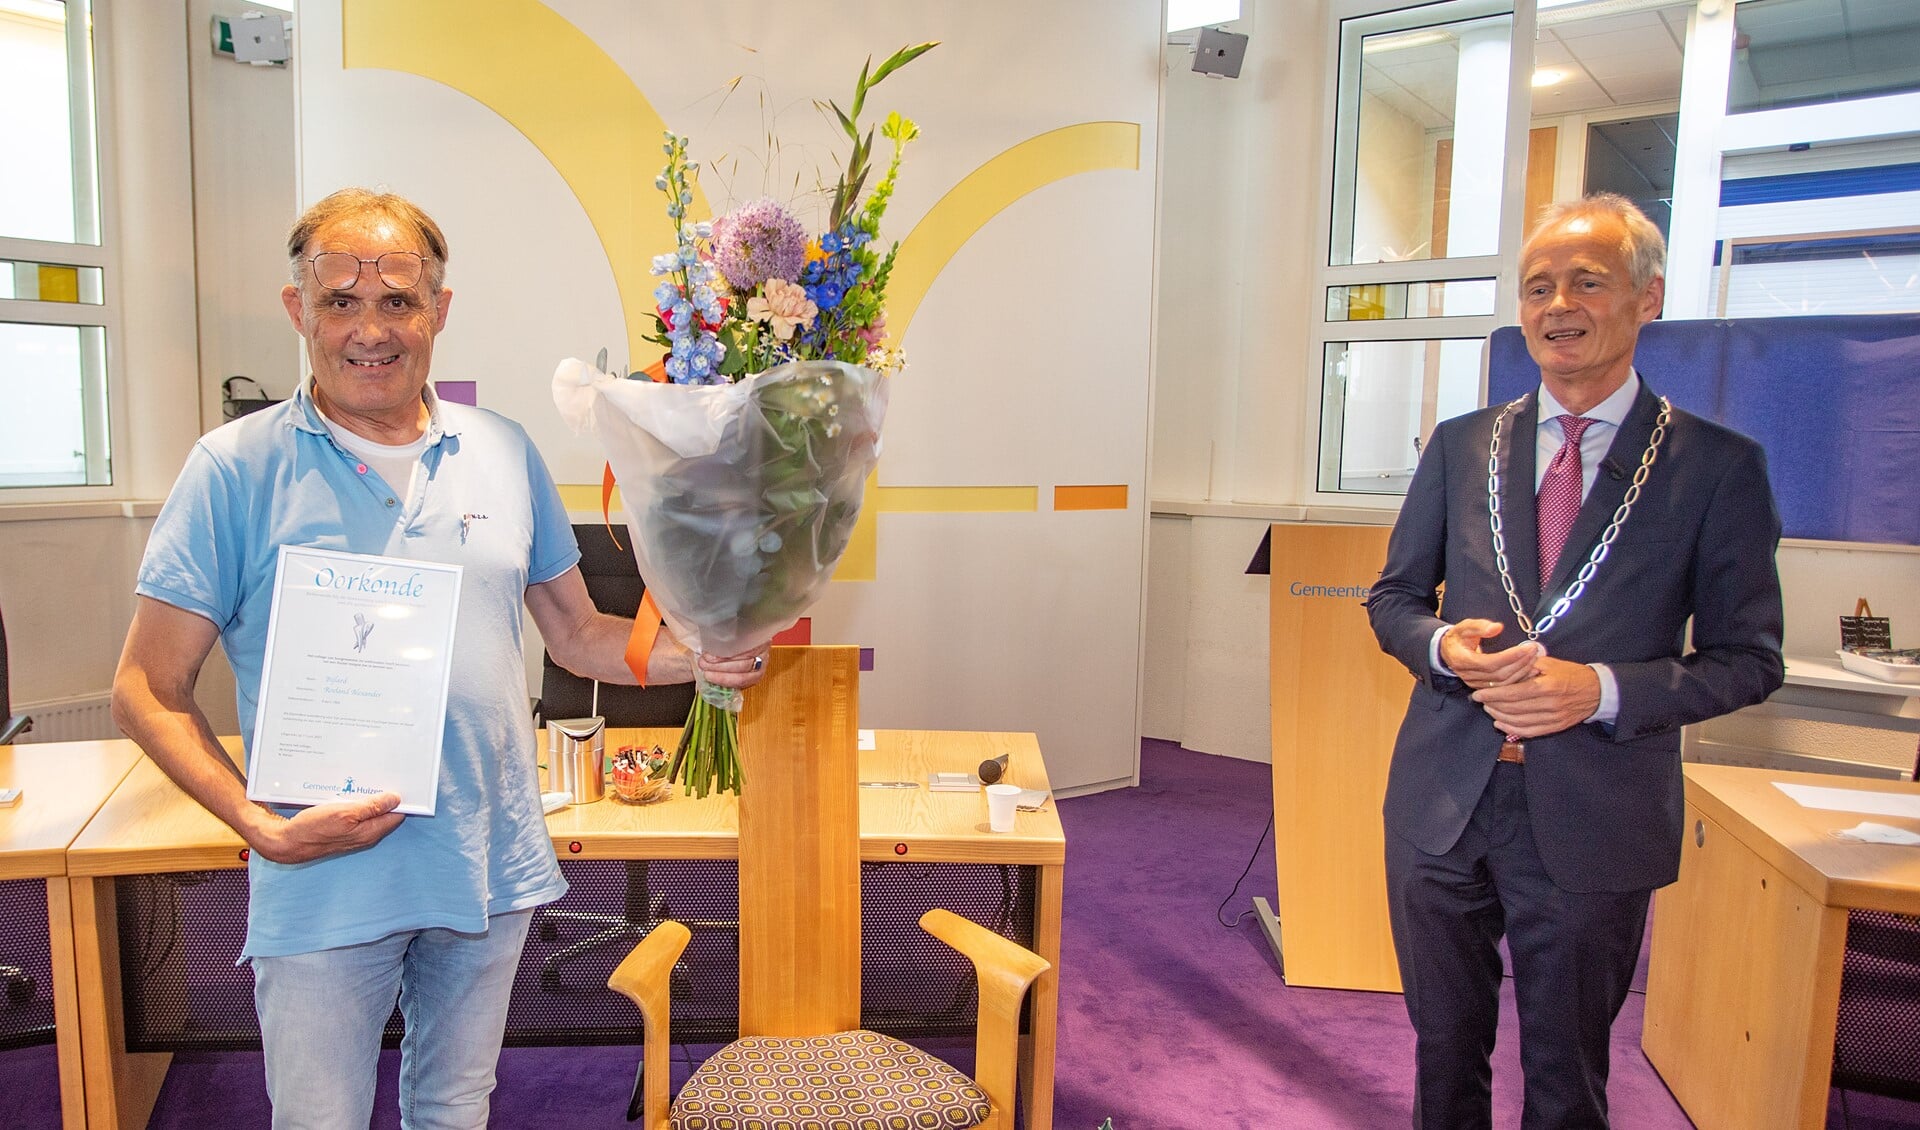 Roeland Bijlard met Huizer insigne, oorkonde en bos bloemen, die hij uit handen van burgemeester Niek Meijer kreeg.